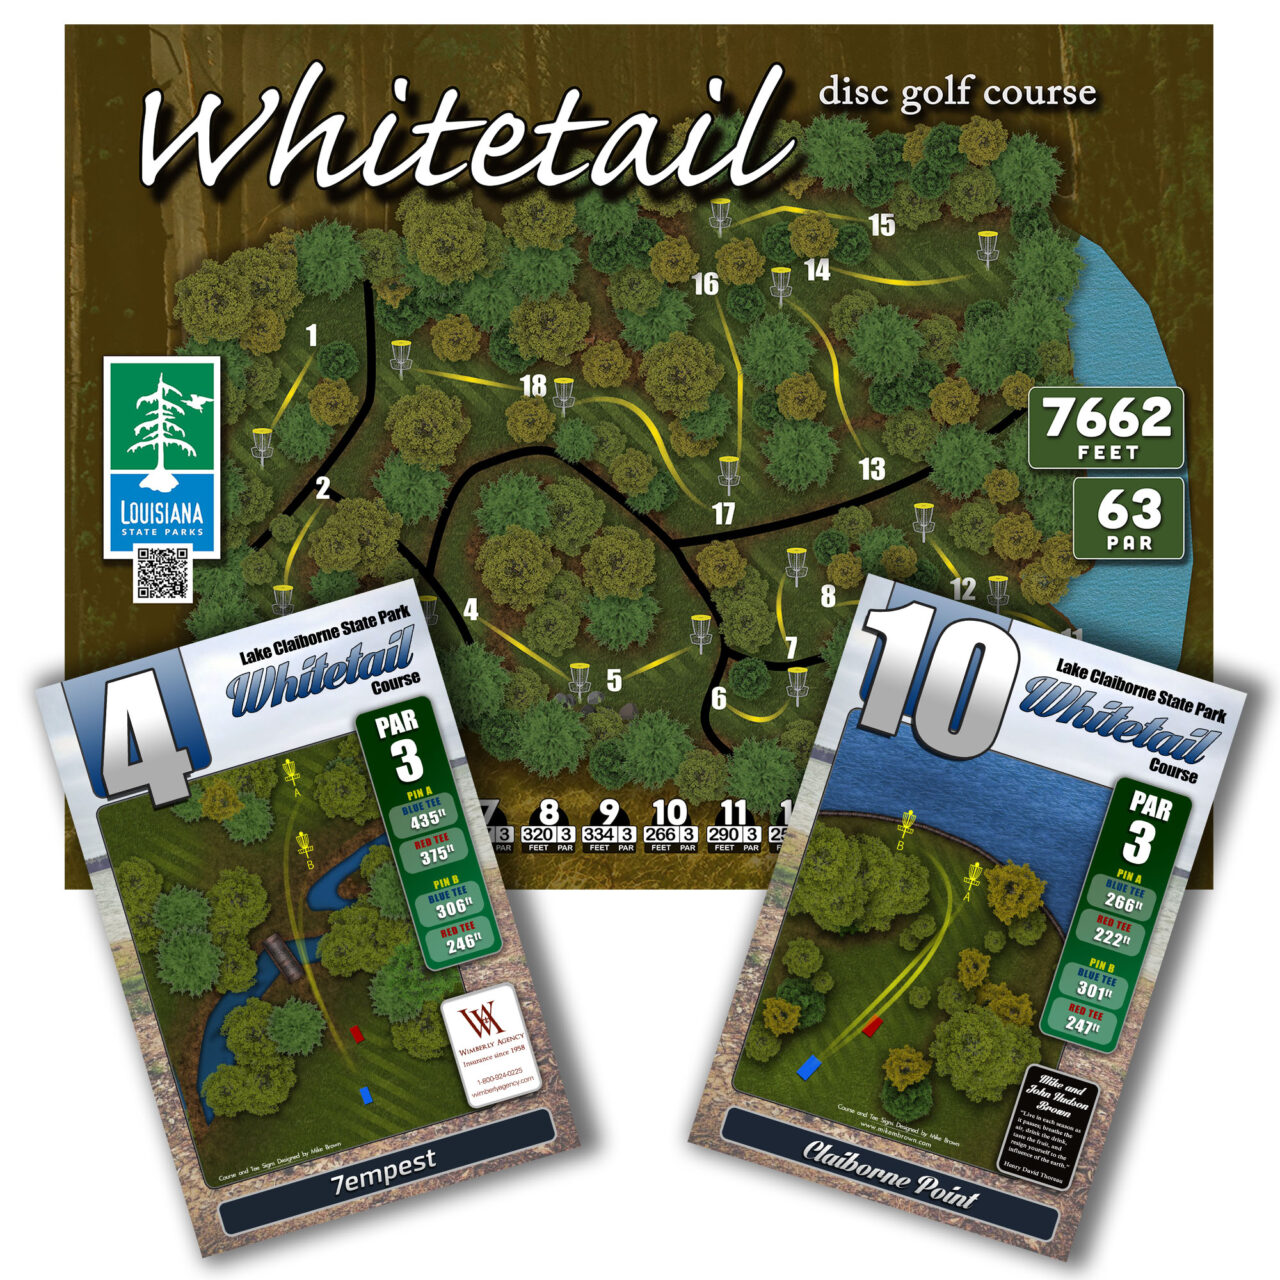 whittail-1280x1280.jpg